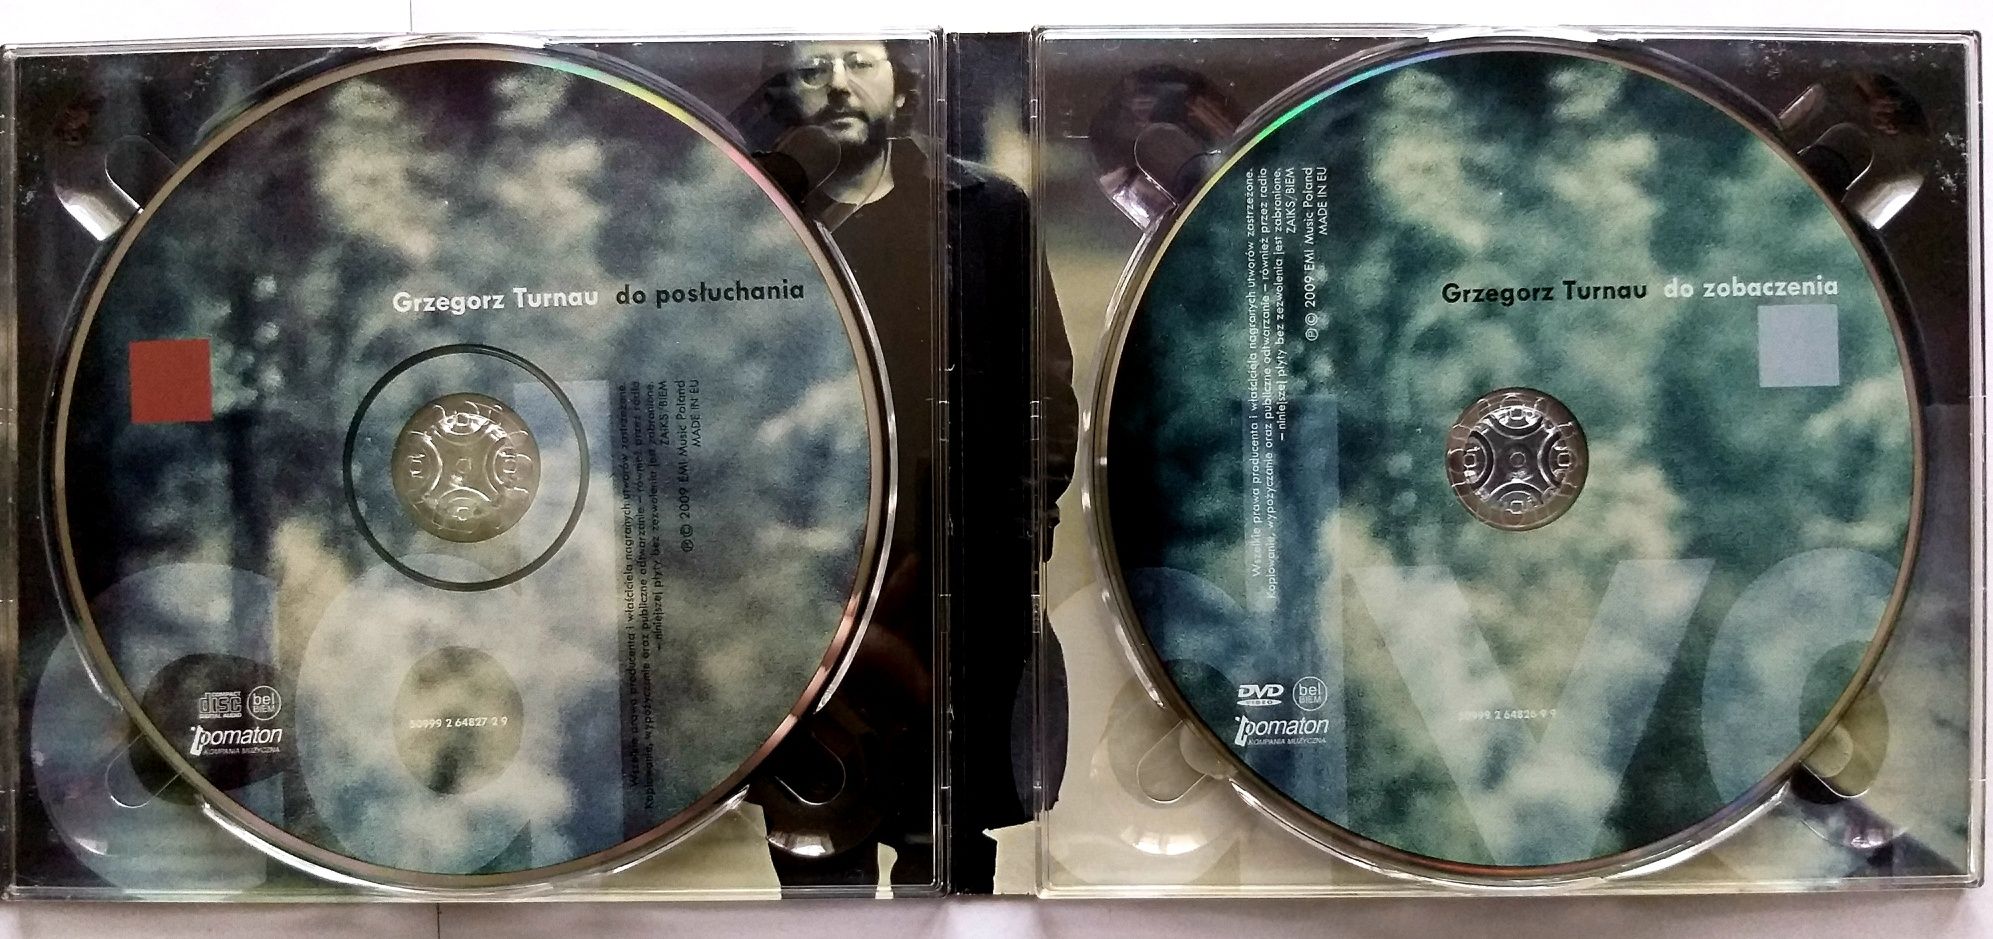 Grzegorz Turnau Do Zobaczenia CD + DVD 2009r